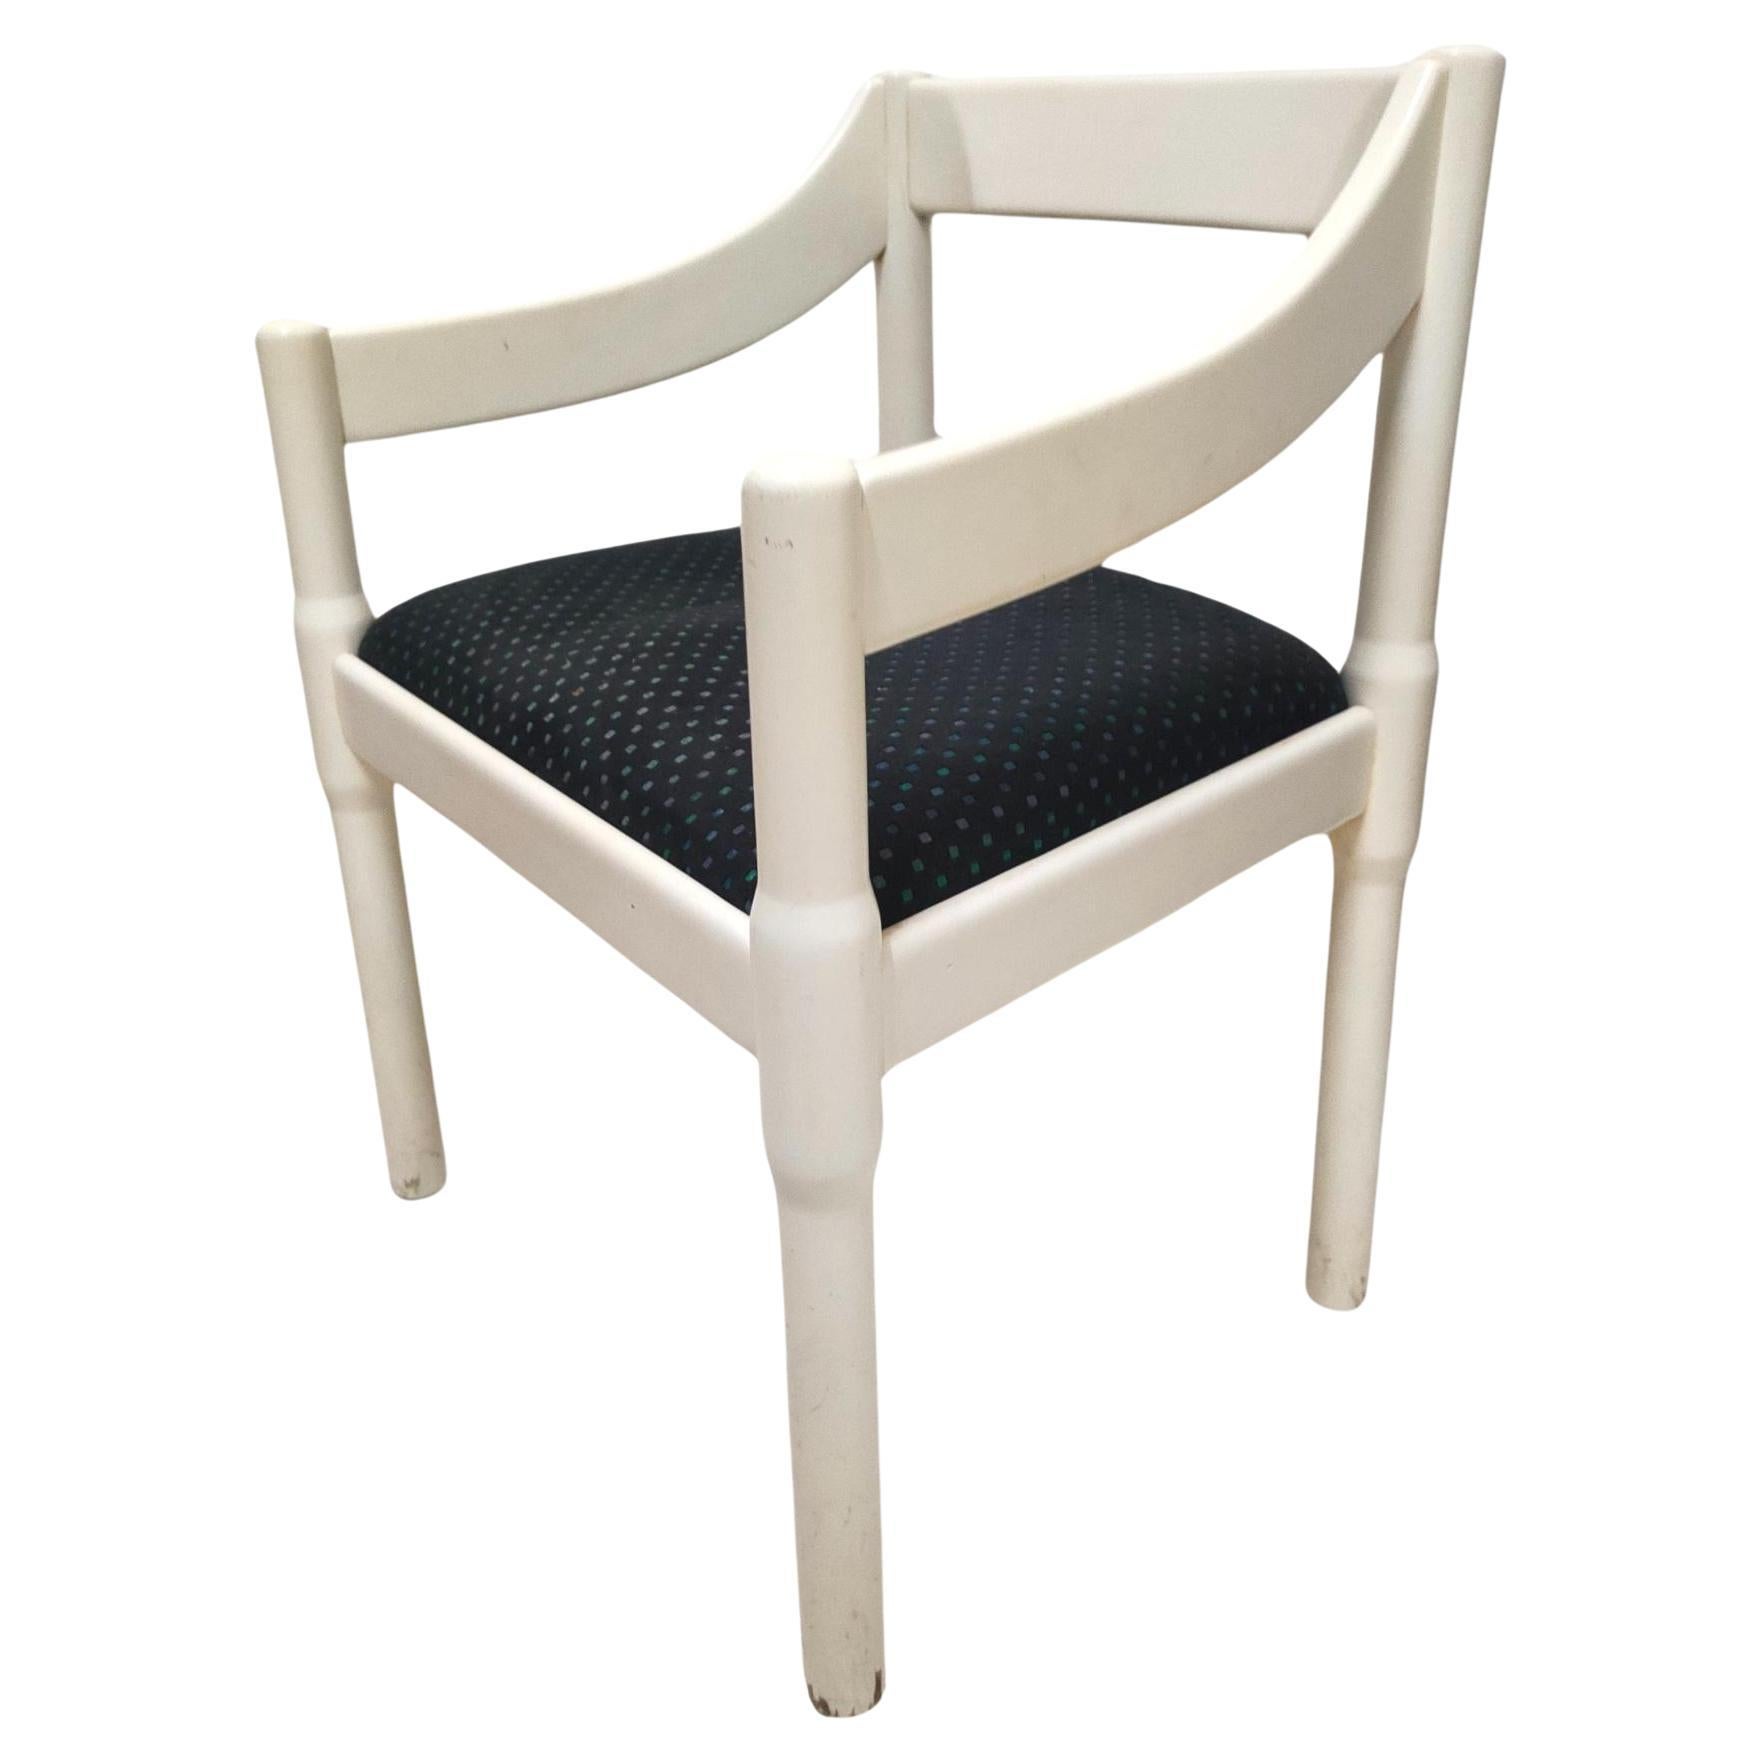 carimate chair original cassina design vico magistretti 1960s